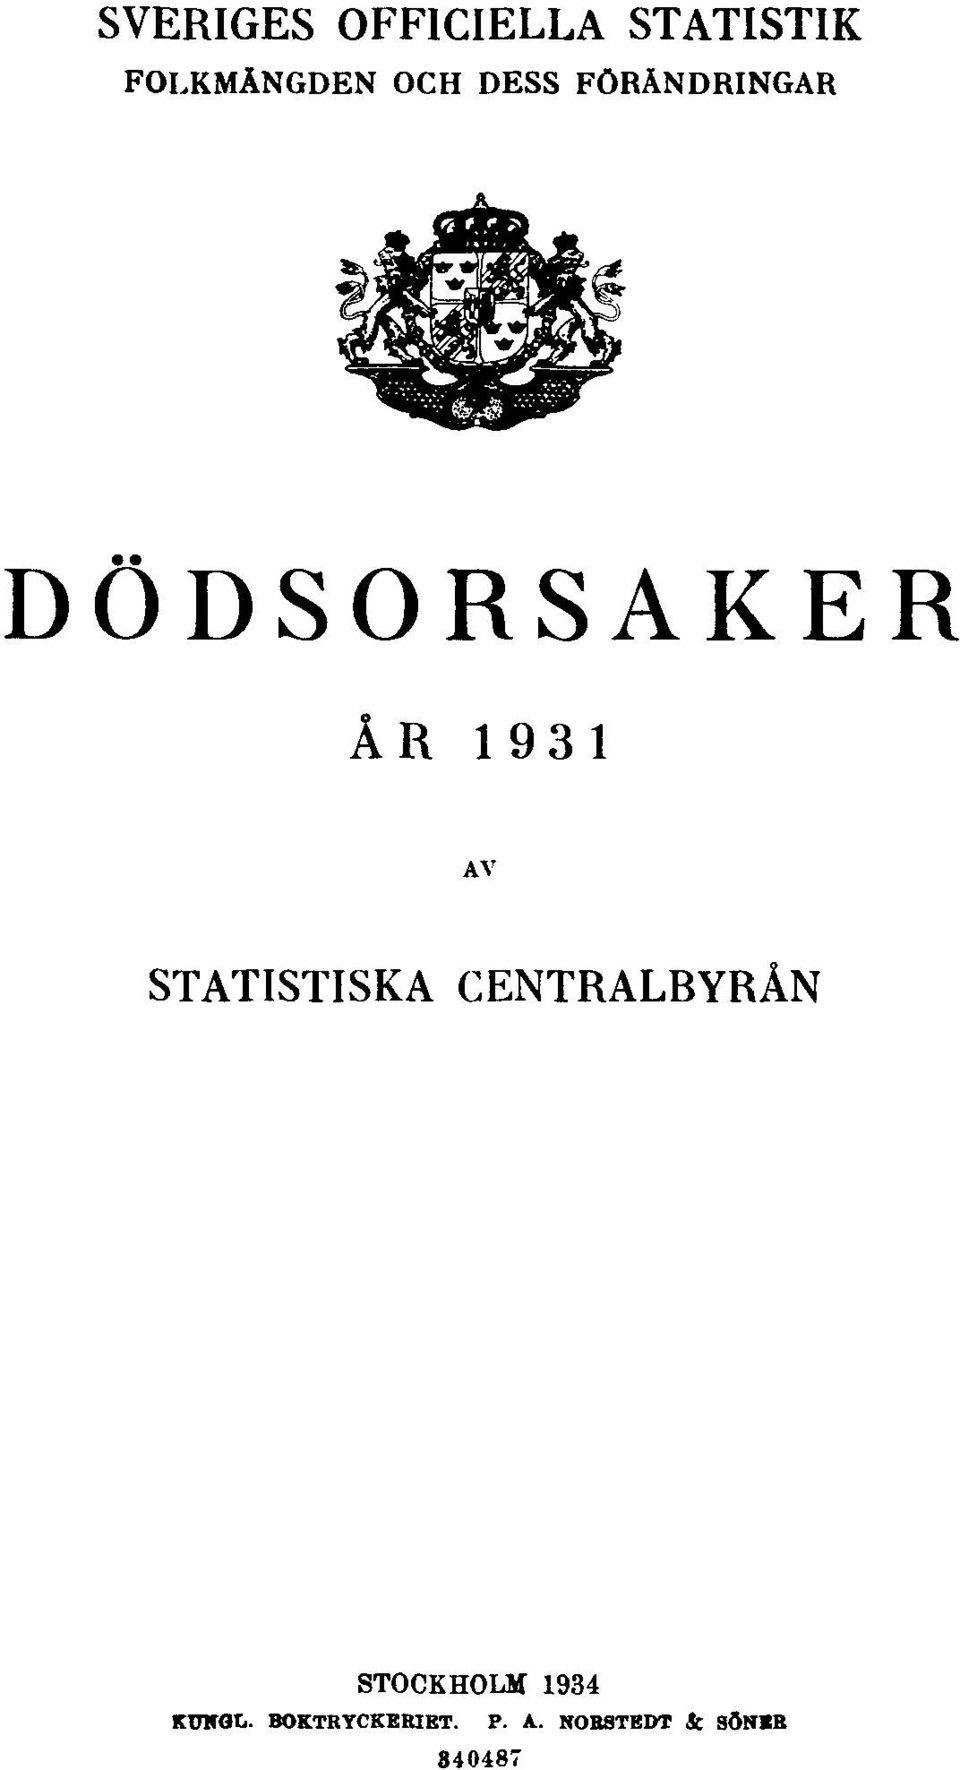 STATISTISKA CENTRALBYRÅN STOCKHOLM 1934